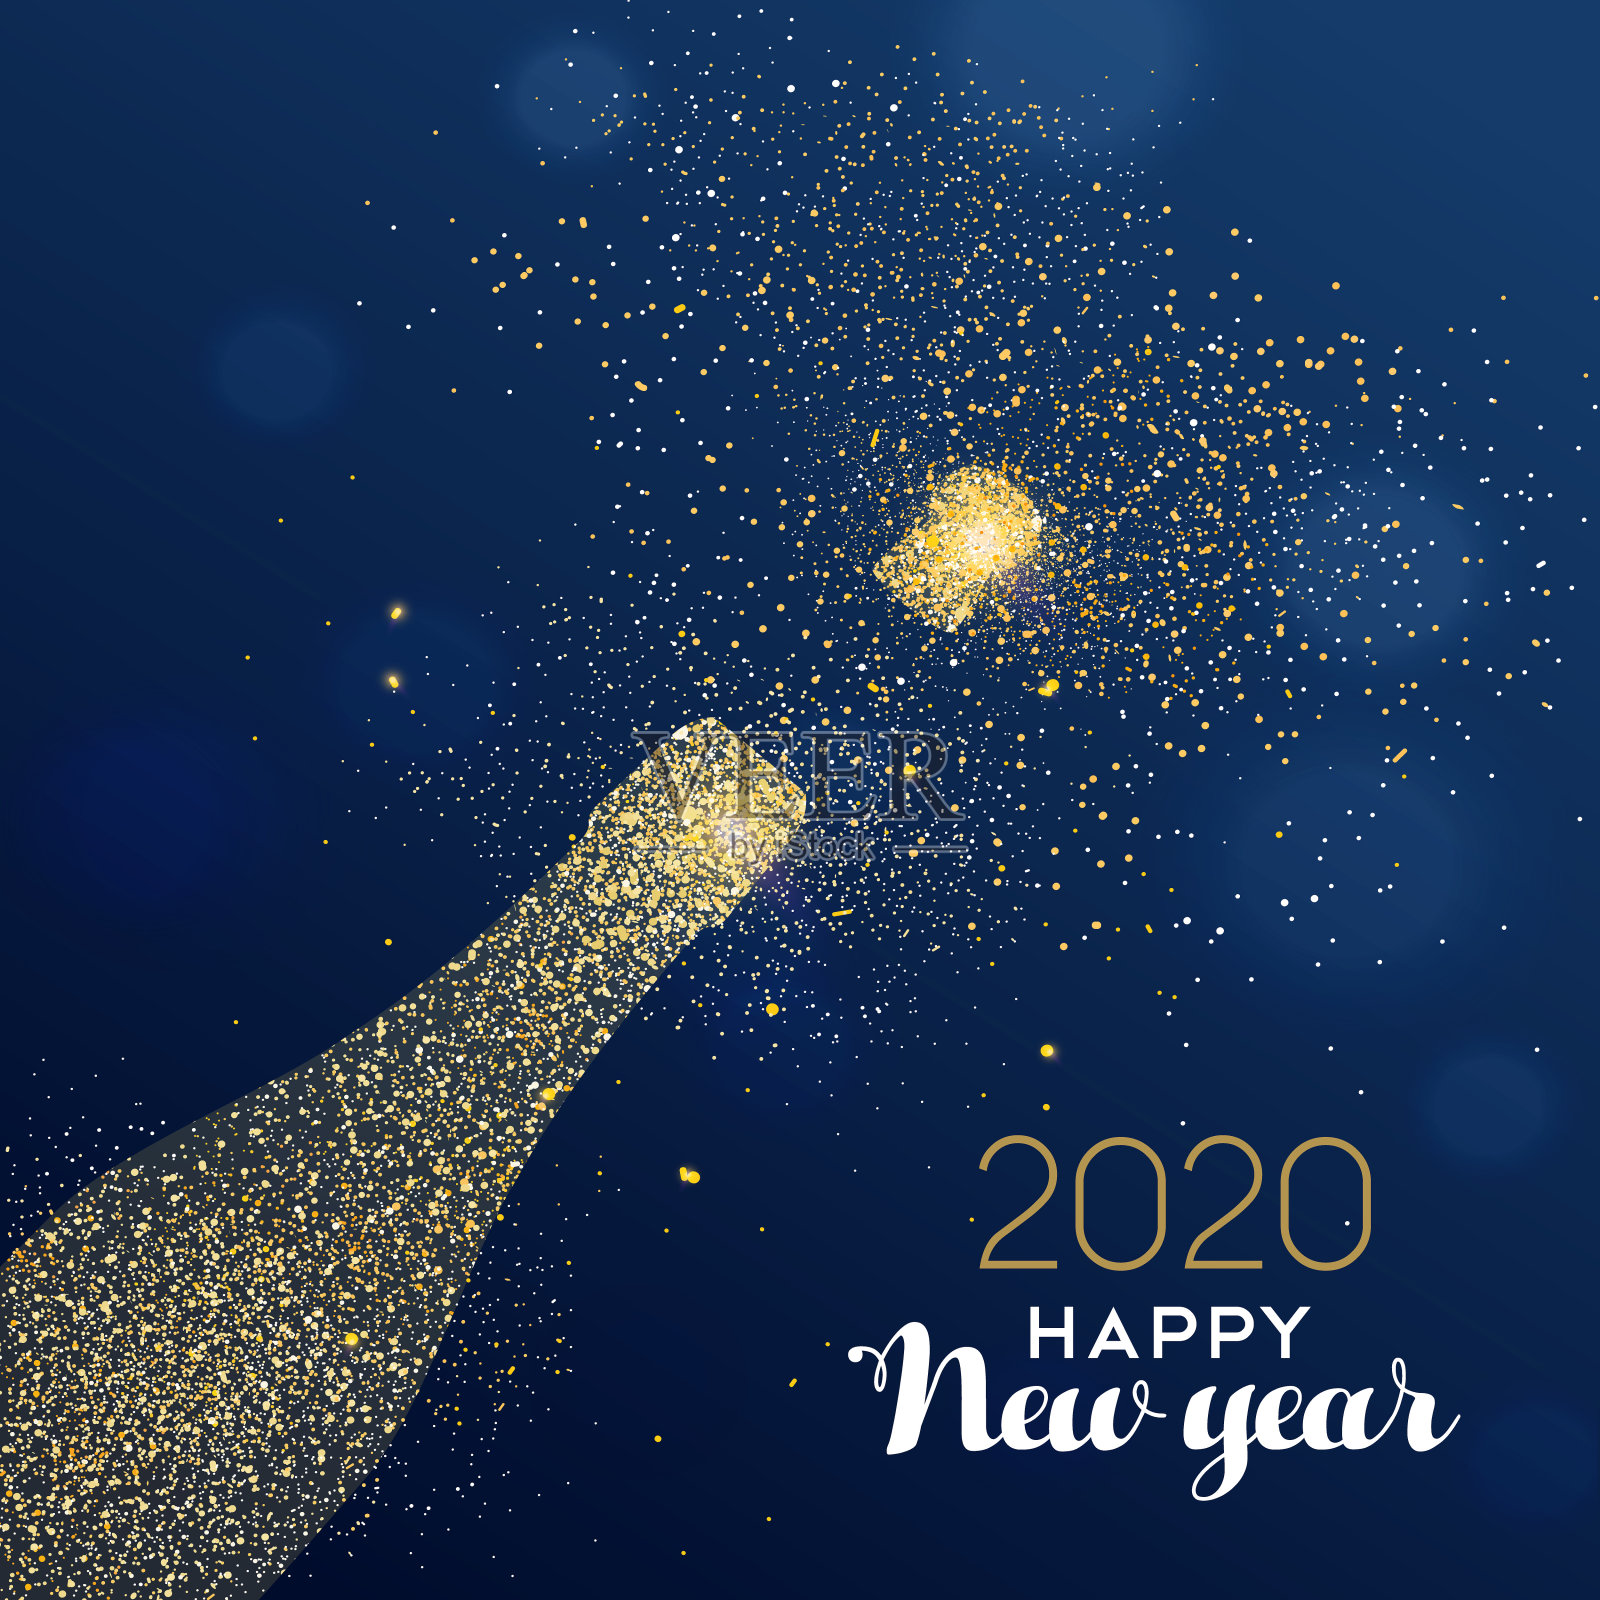 闪闪发光的香槟瓶的2020年新年卡片设计模板素材